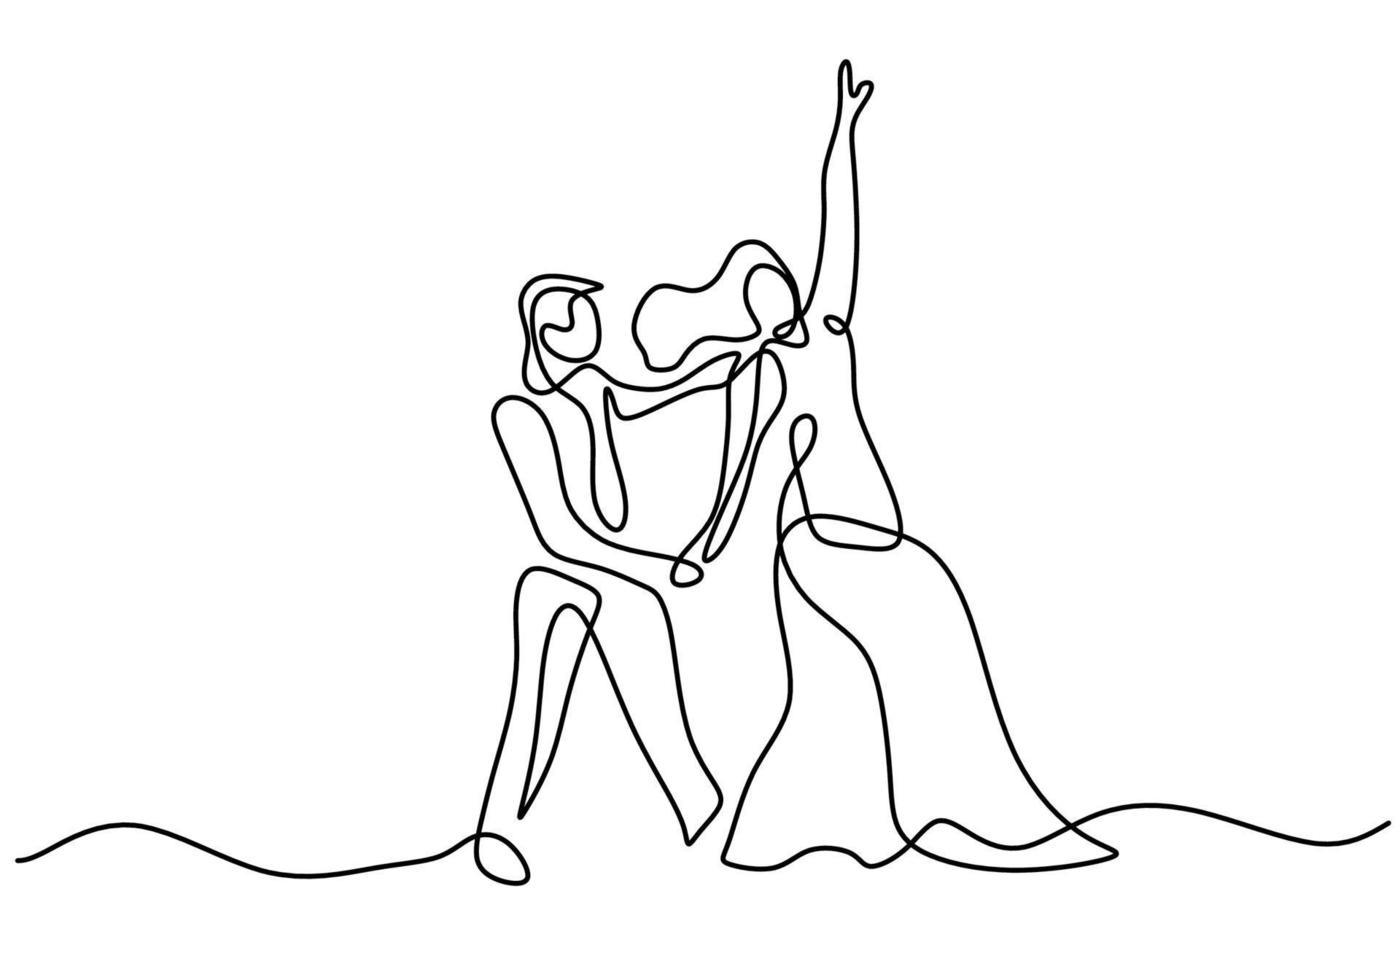 disegno continuo di una linea di ballo di coppia isolato su priorità bassa bianca. uomo con smoking e donna con abito elegante facendo un design minimalista danzante romantico. illustrazione di schizzo di vettore